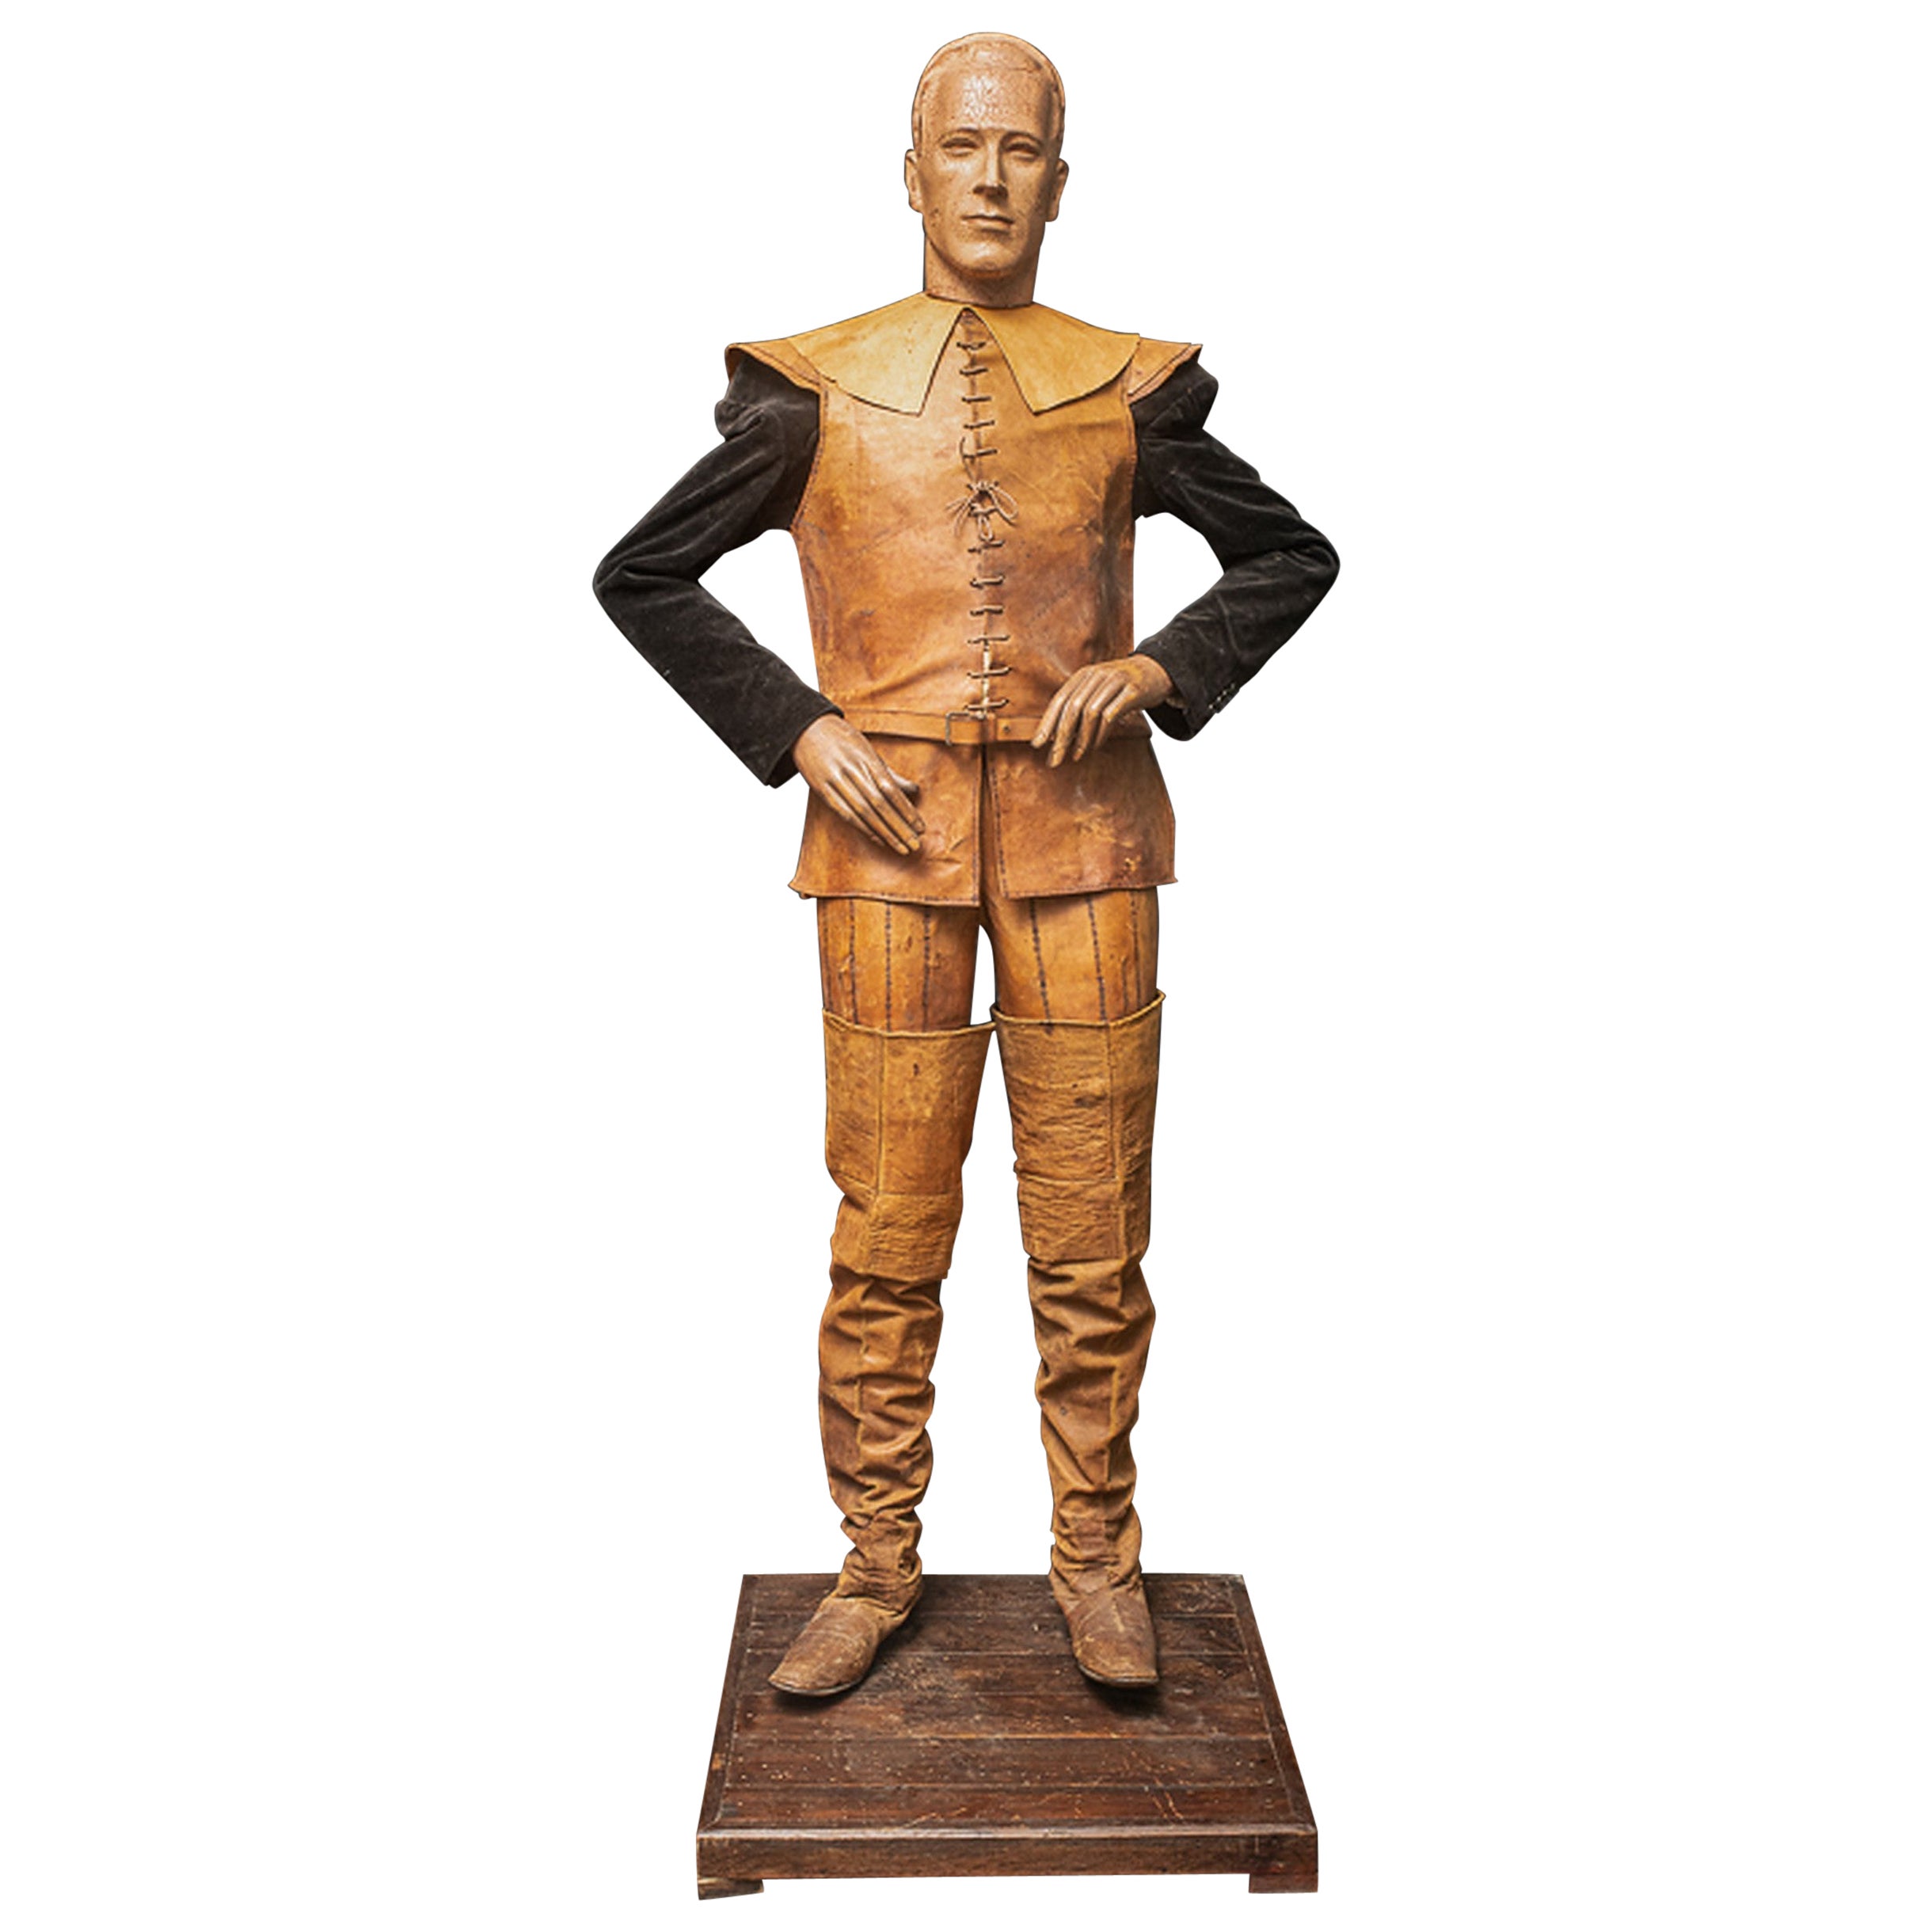 Mannequin aus Holz in Vintage-Stil mit beweglichen Armen und Beinen, beweglich im Angebot